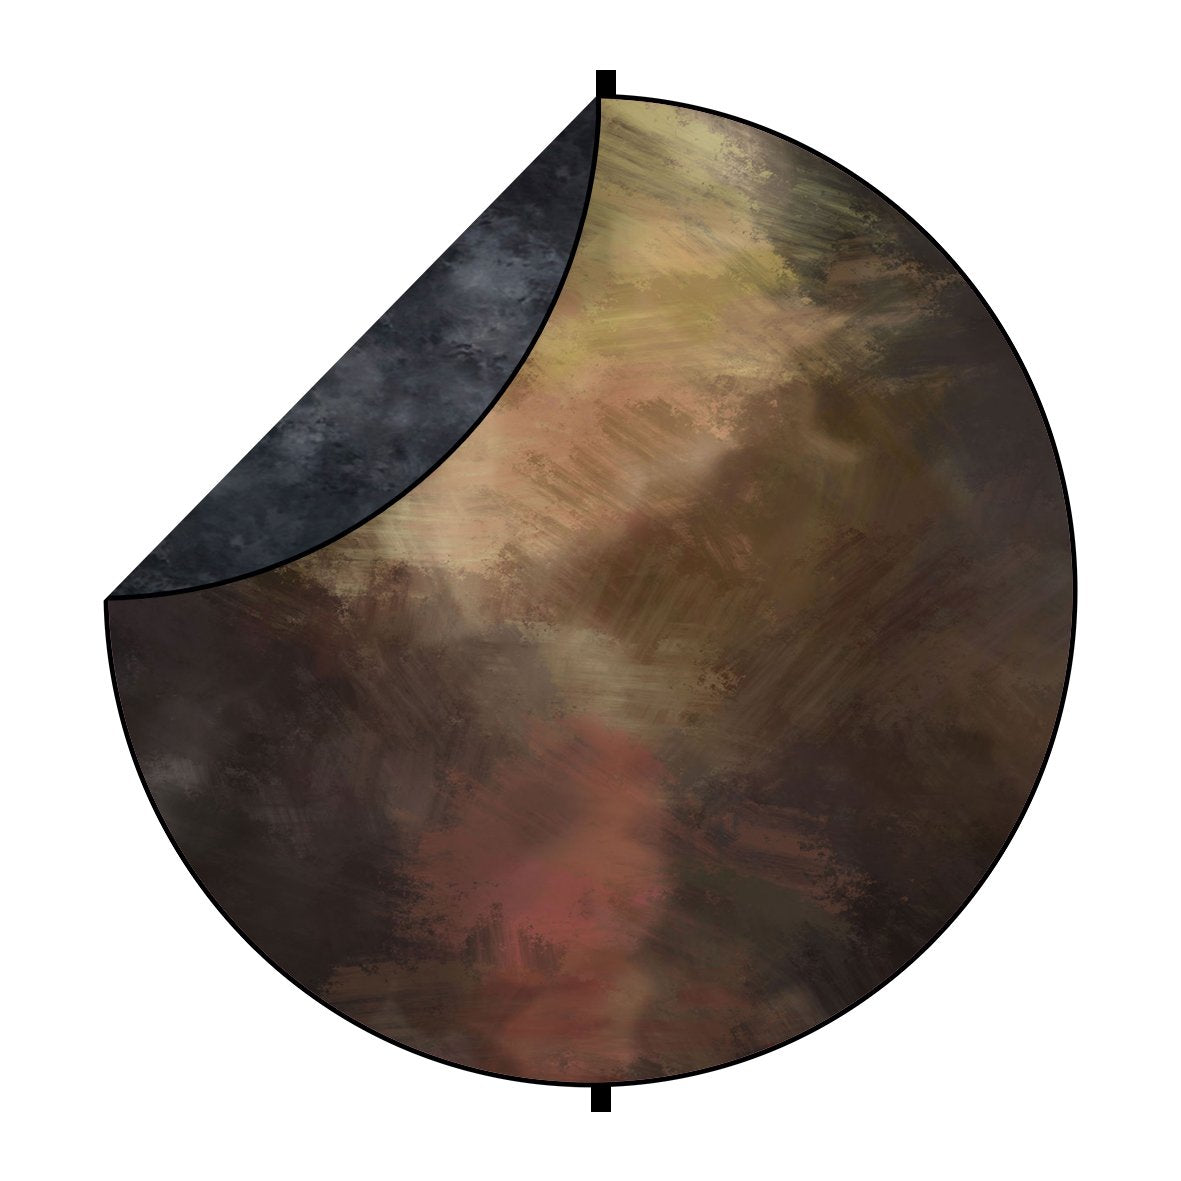 Kate Toile de fond pliable ronde mixte de texture abstraite noire / brune pour la photographie 5X5ft(1.5x1.5m)